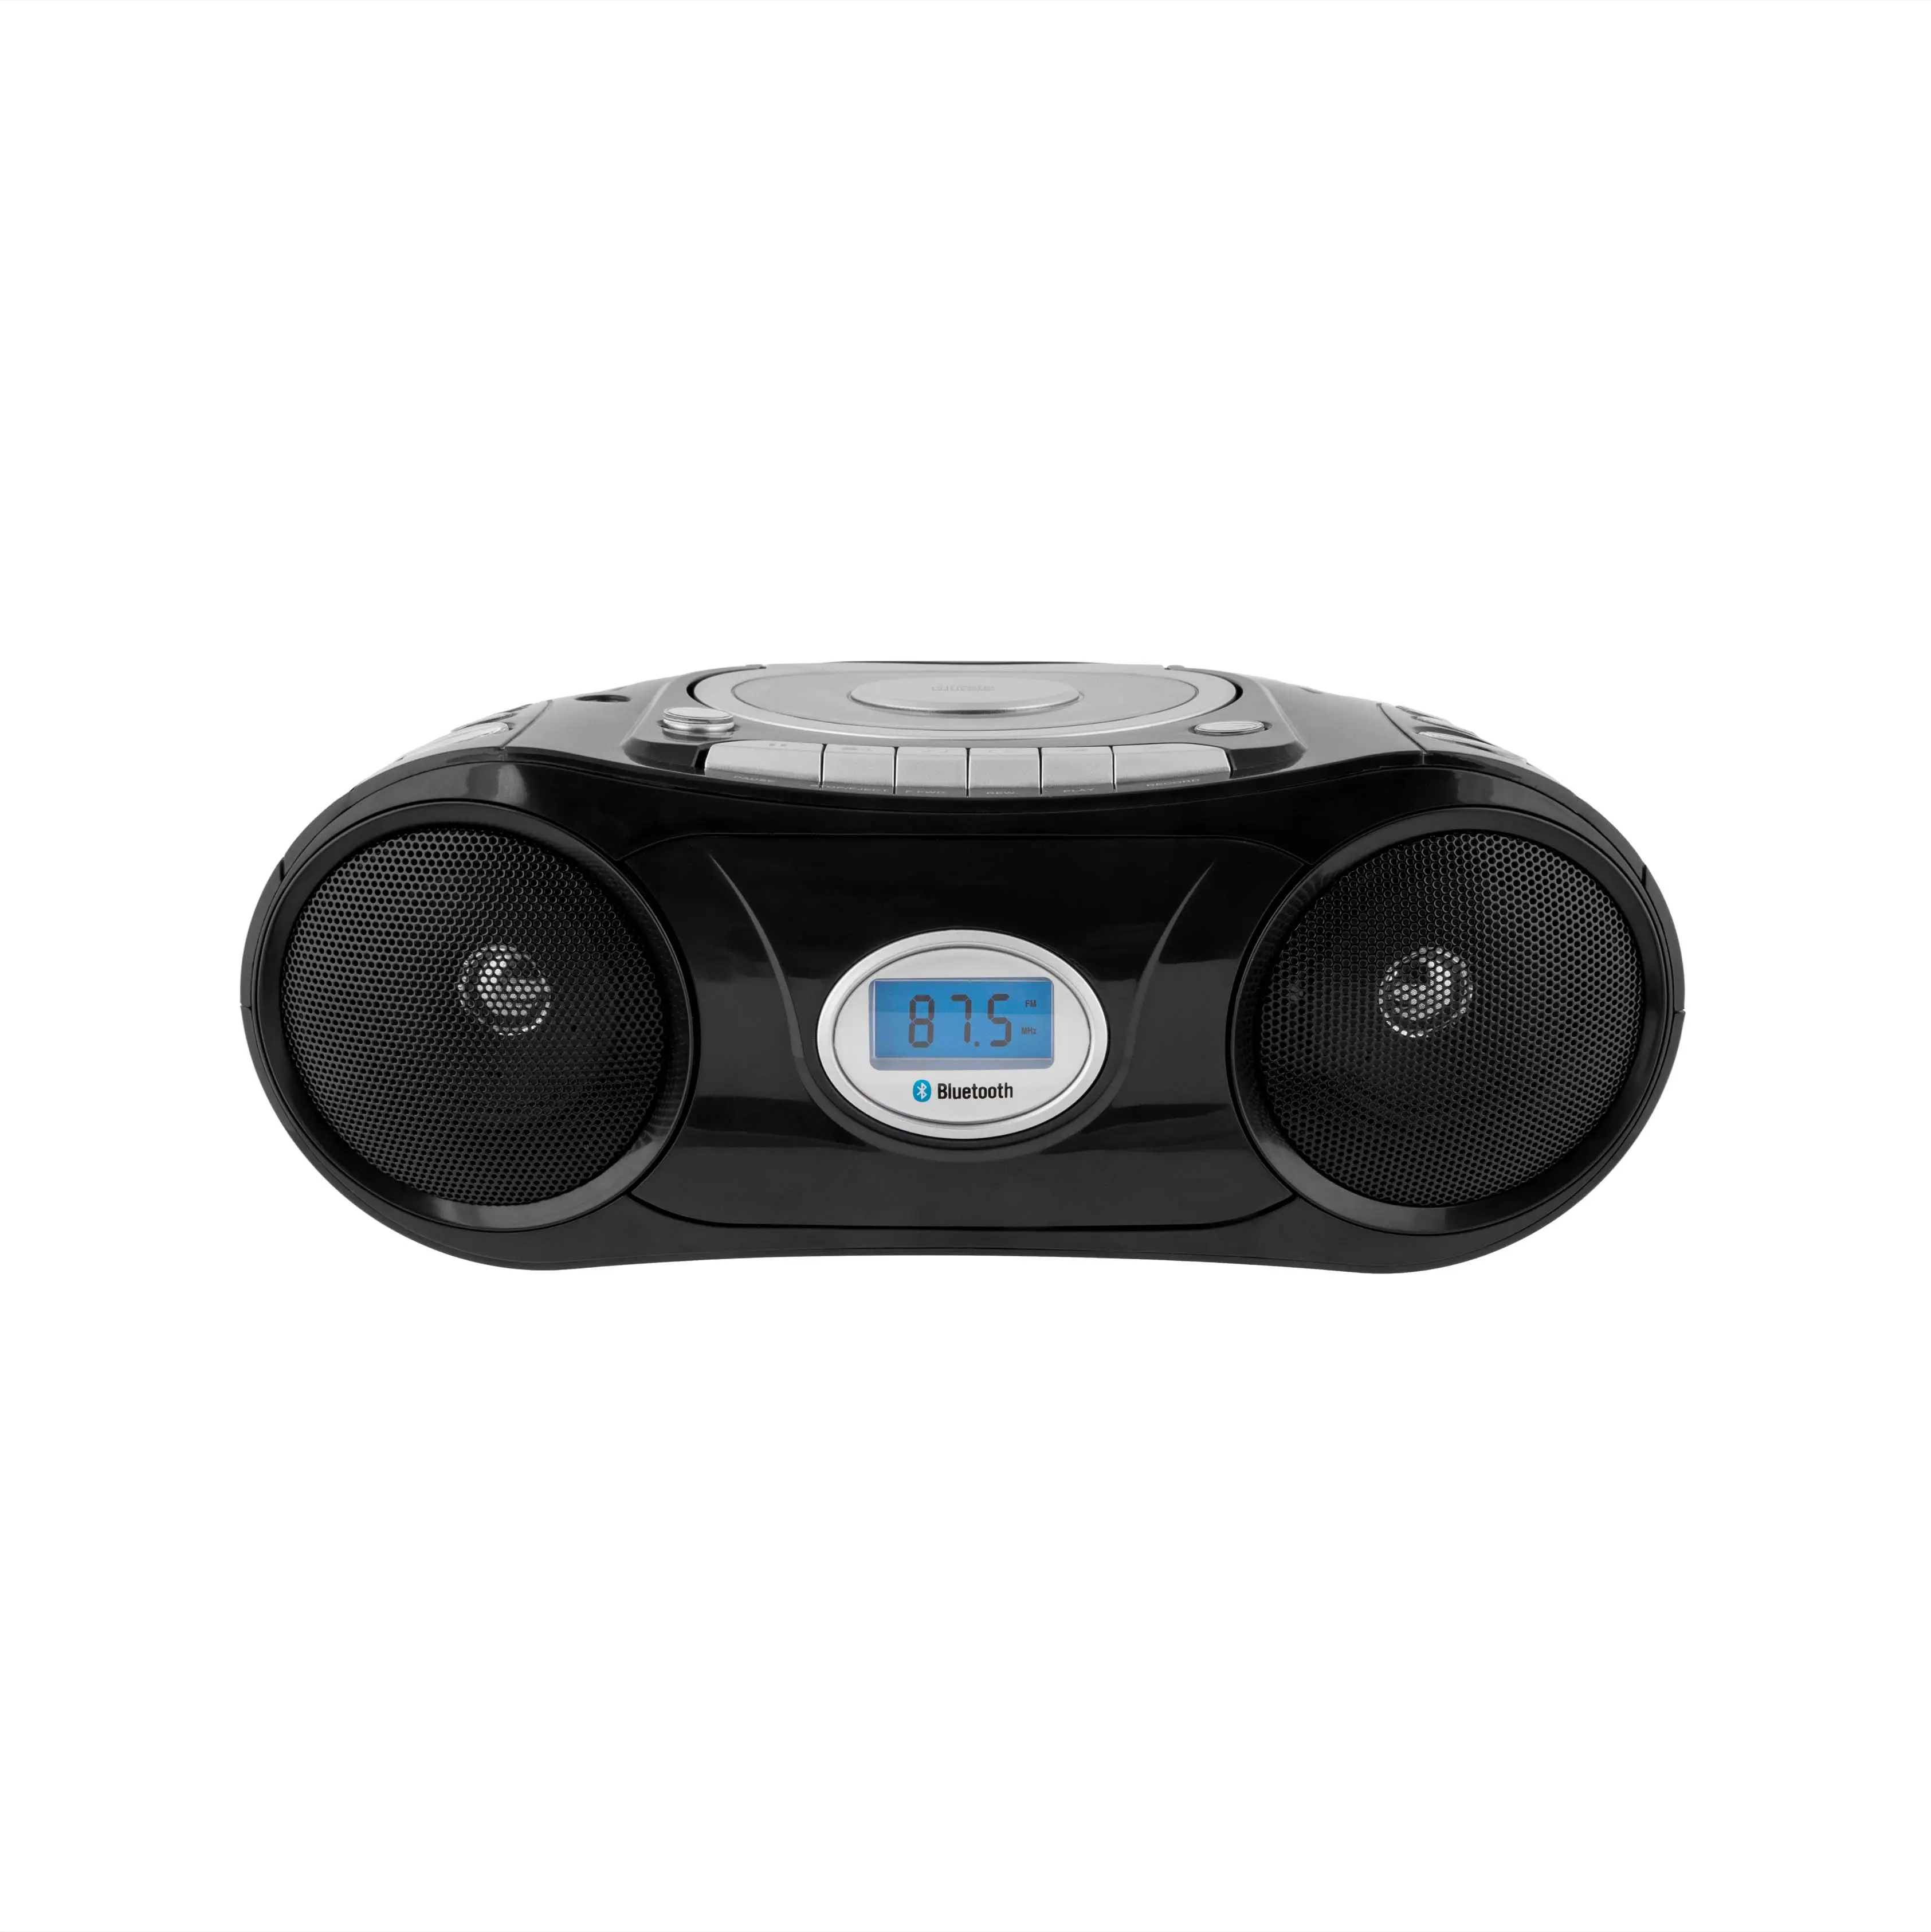 OEM pemutar kaset ekstra BASS portabel, Boombox produk baru pemutar kaset rekaman Radio antena CD Bluetooth dioperasikan oleh Speaker baterai